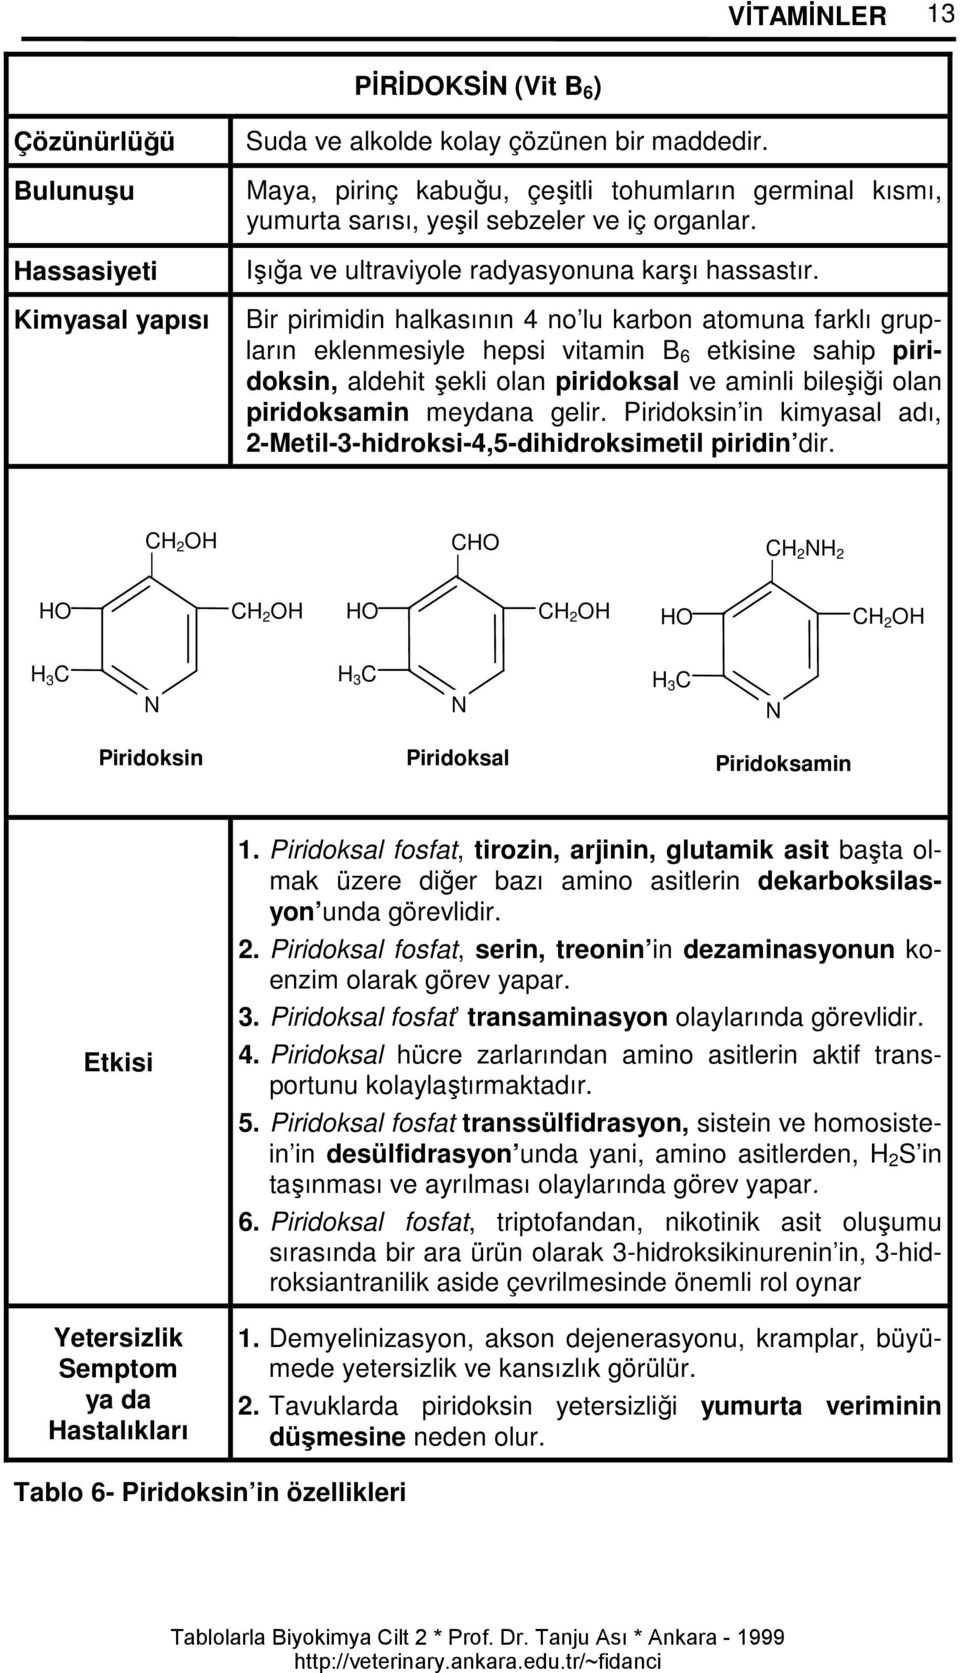 Bir pirimidin halkasının 4 no lu karbon atomuna farklı grupların eklenmesiyle hepsi vitamin B 6 etkisine sahip piridoksin, aldehit şekli olan piridoksal ve aminli bileşiği olan piridoksamin meydana